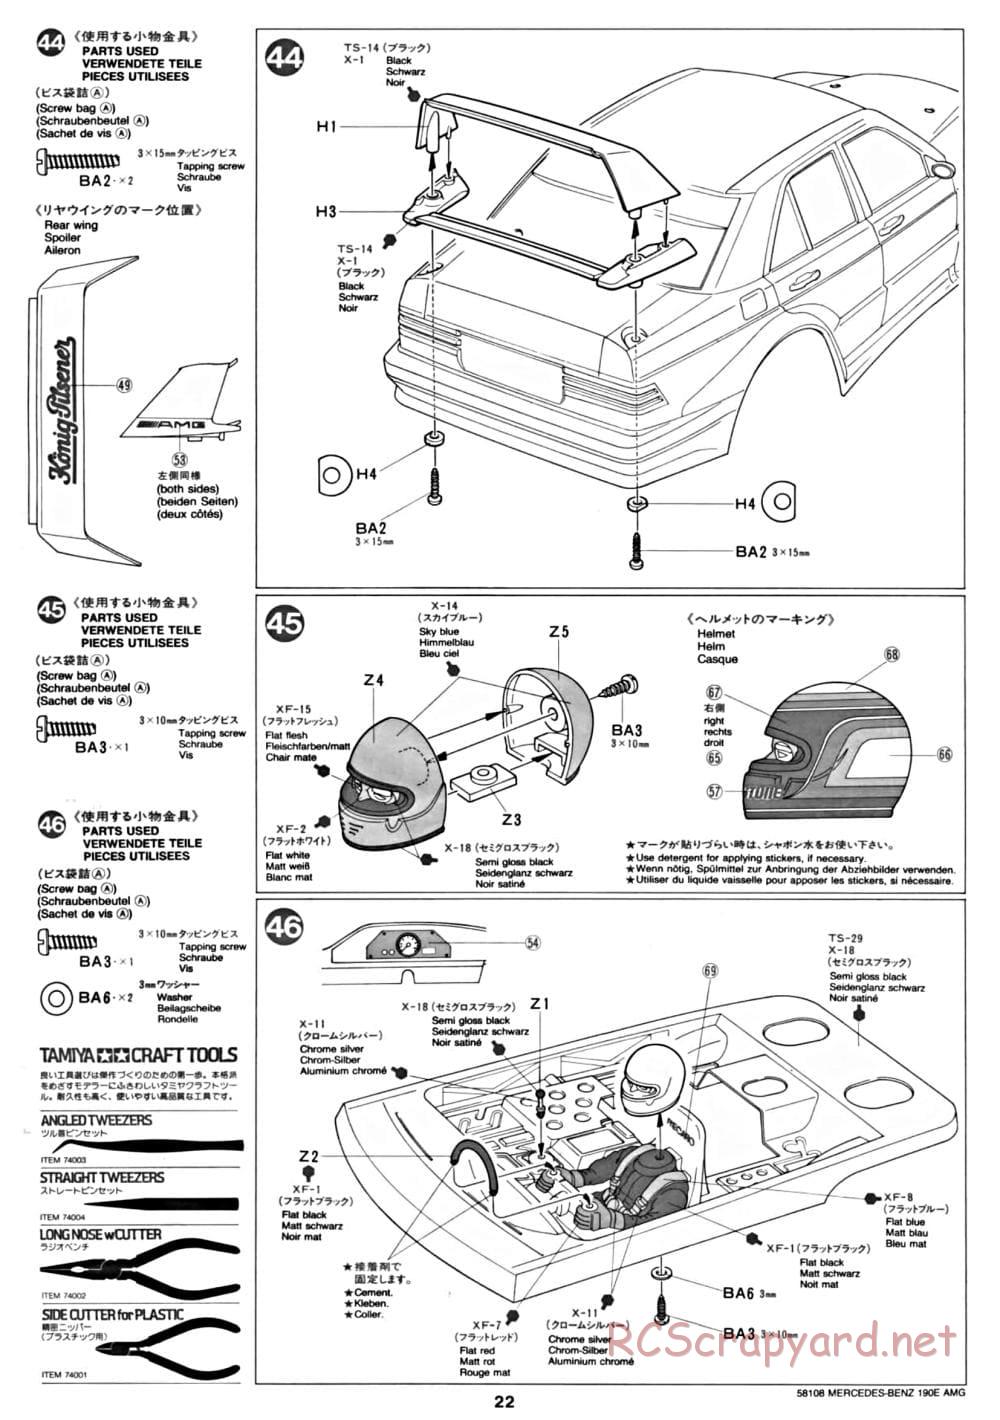 Tamiya - Mercedes Benz 190E Evo.II AMG - TA-01 Chassis - Manual - Page 22